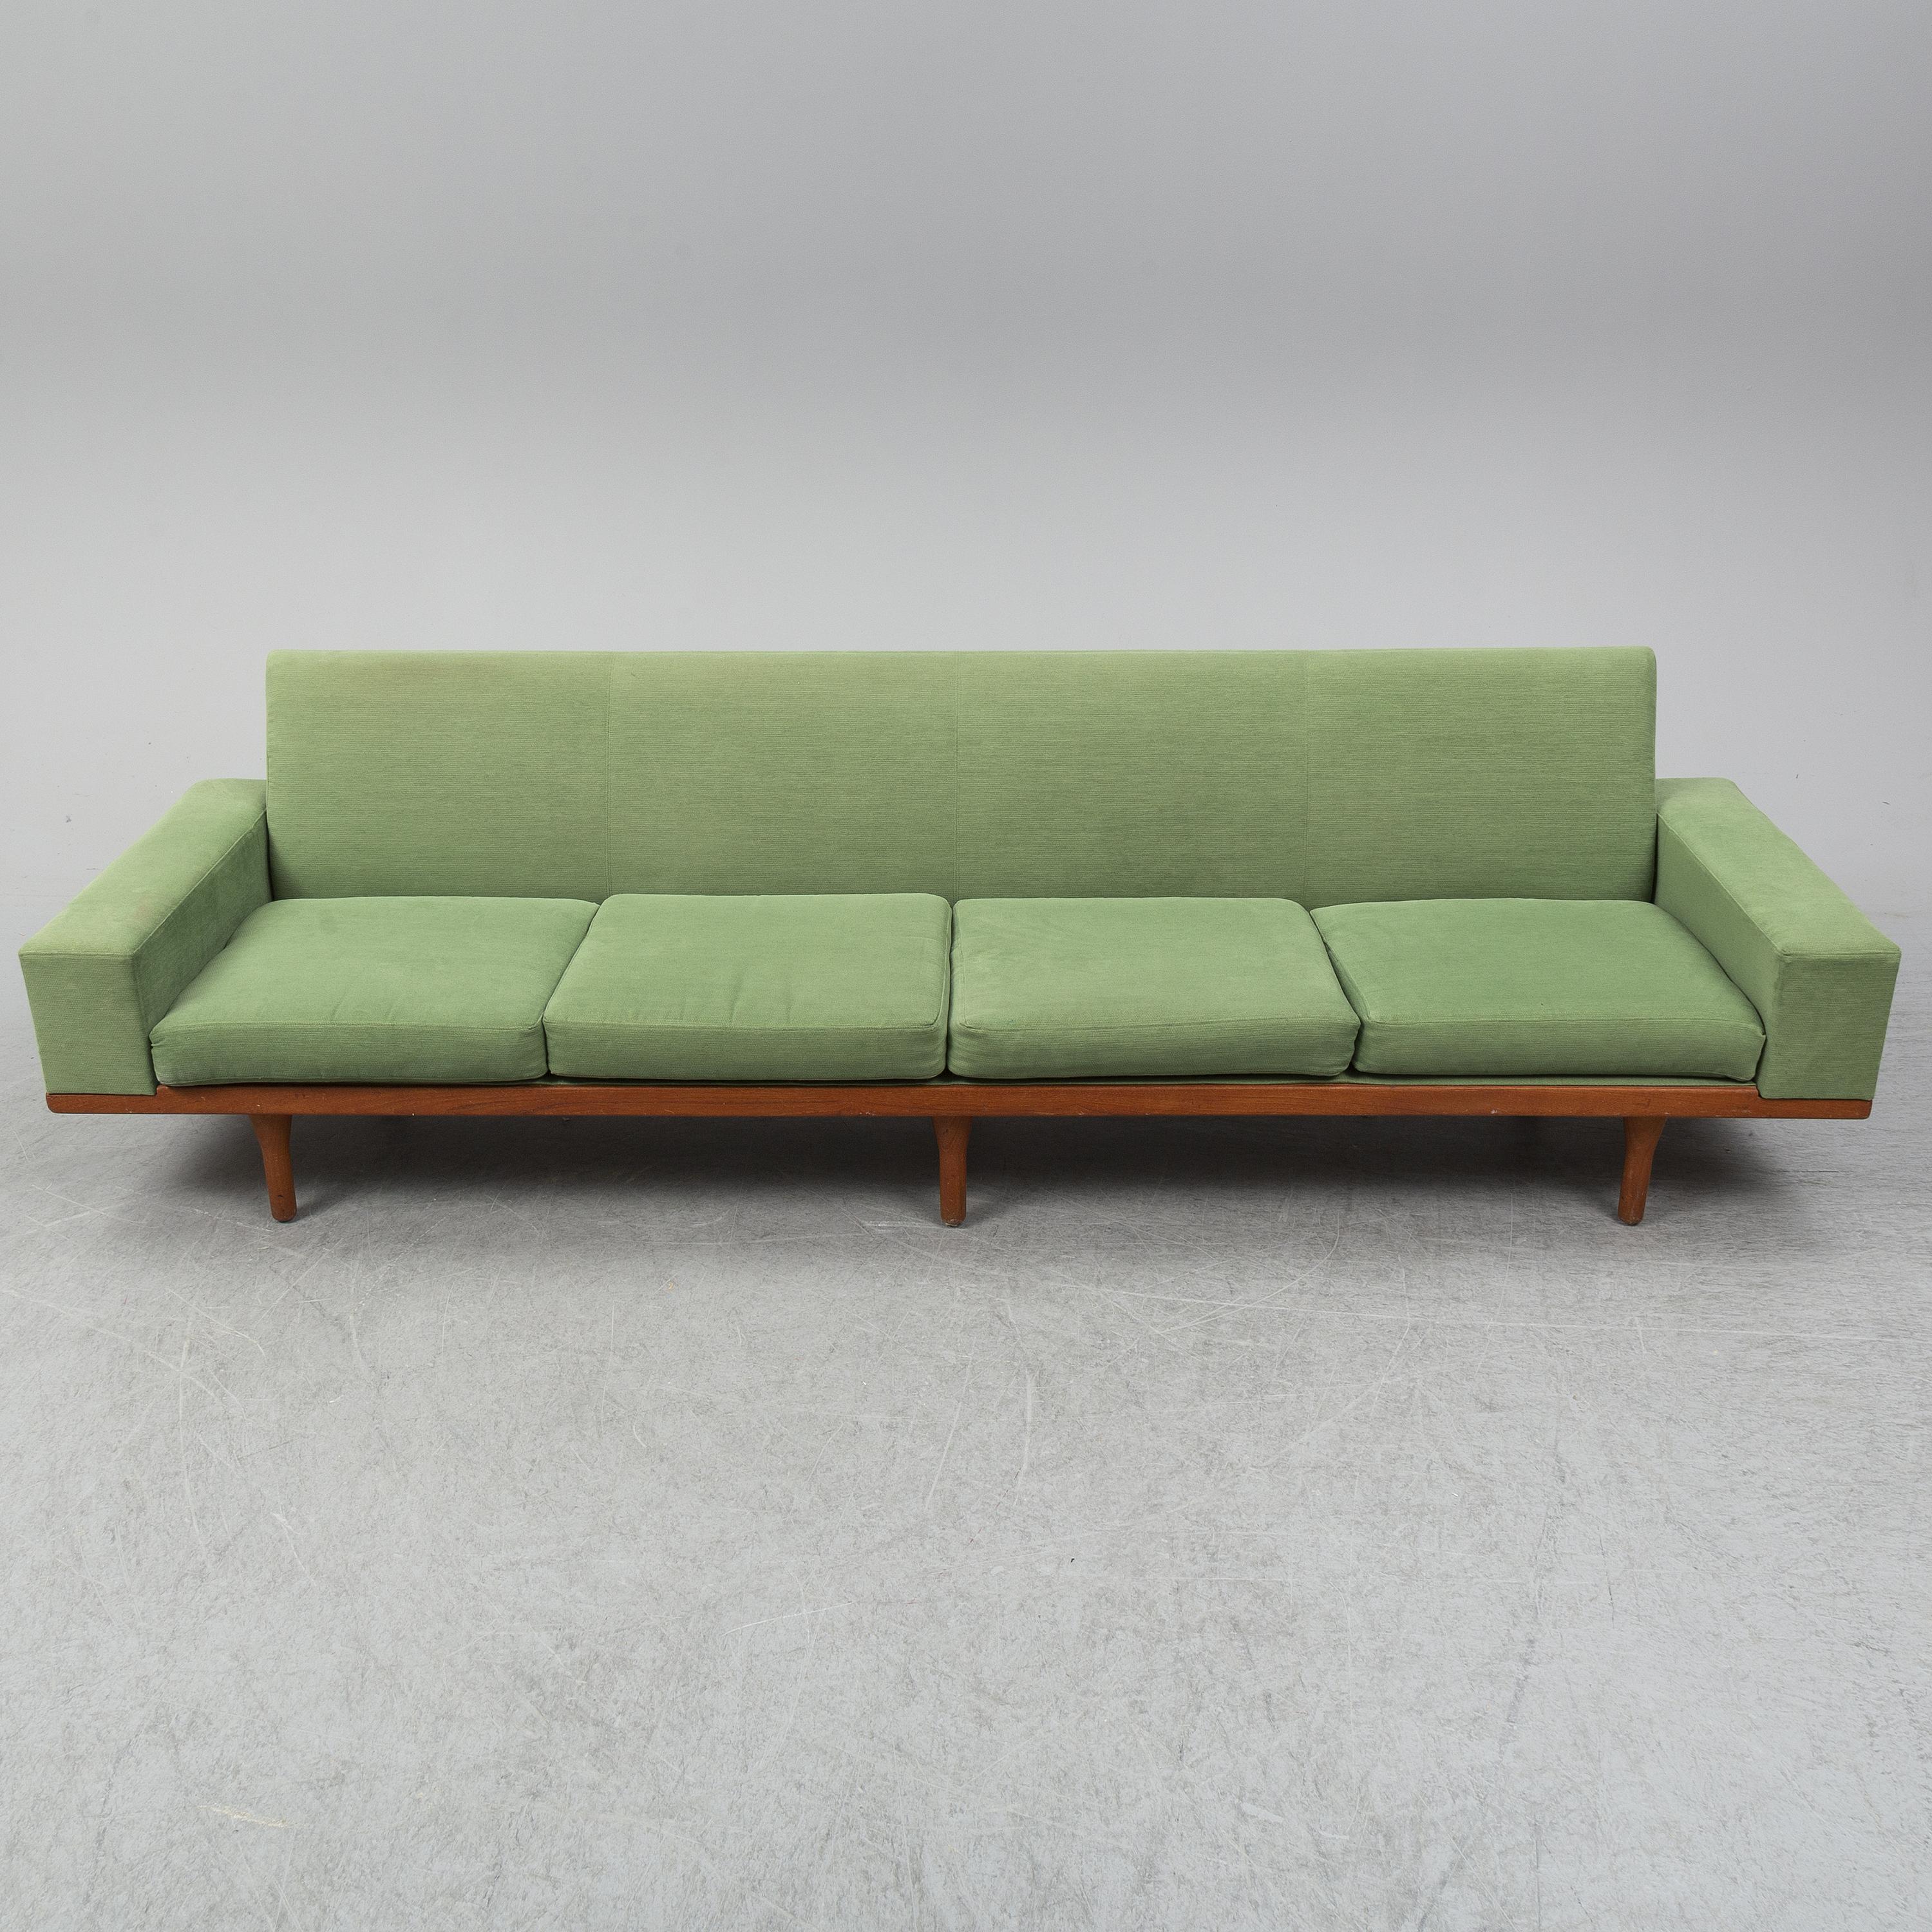 Die für das dänische Design typischen niedrigen Linien machen The Australia zu einem perfekten Möbelstück. Eine dezente Innenfederung und feste Kissen sorgen für ein komfortables Sitzerlebnis.  Viele von Wikkelsos Werken wurden von der Natur